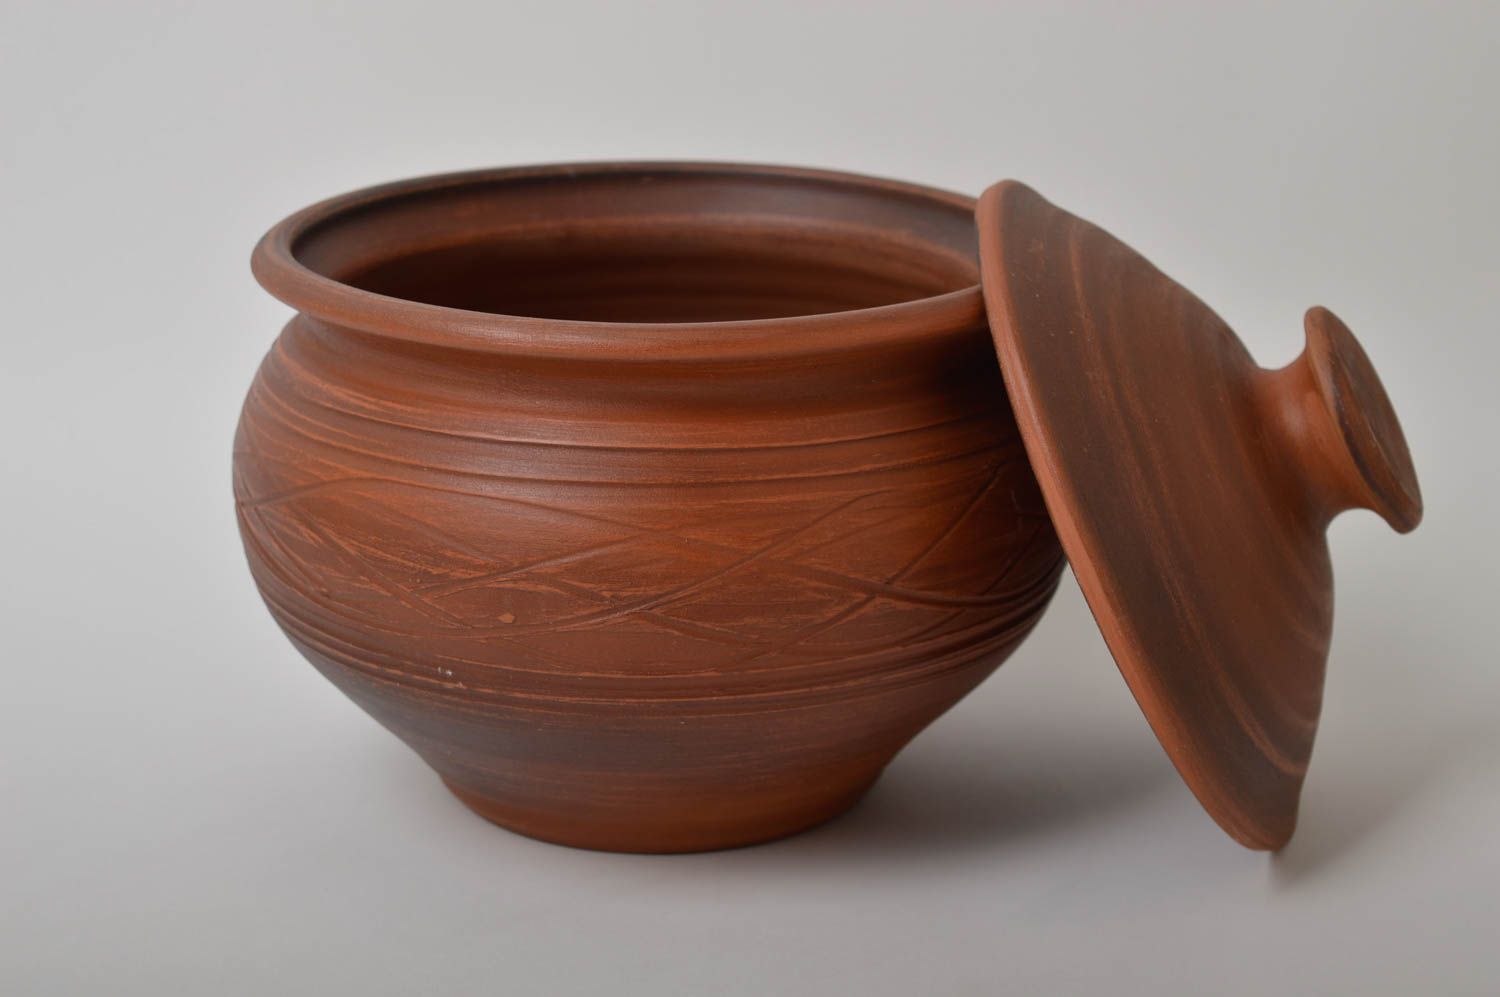 Topf aus Ton handmade Deko für Küche Keramik Geschirr im Öko Style schön foto 3